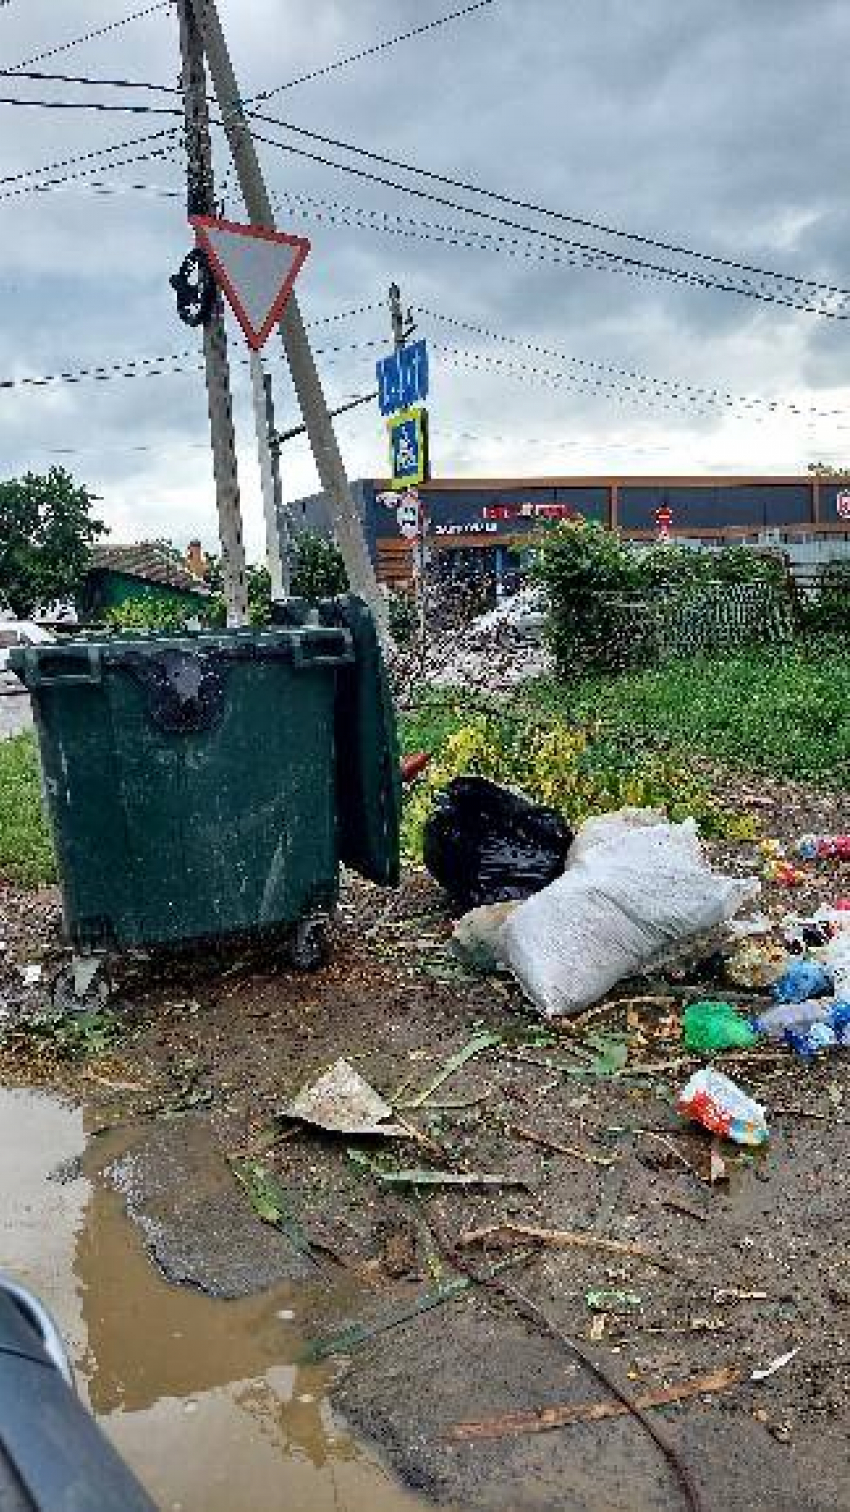 Жители Кырсмка жалуются на состояние территории около мусорных баков по Лагерной